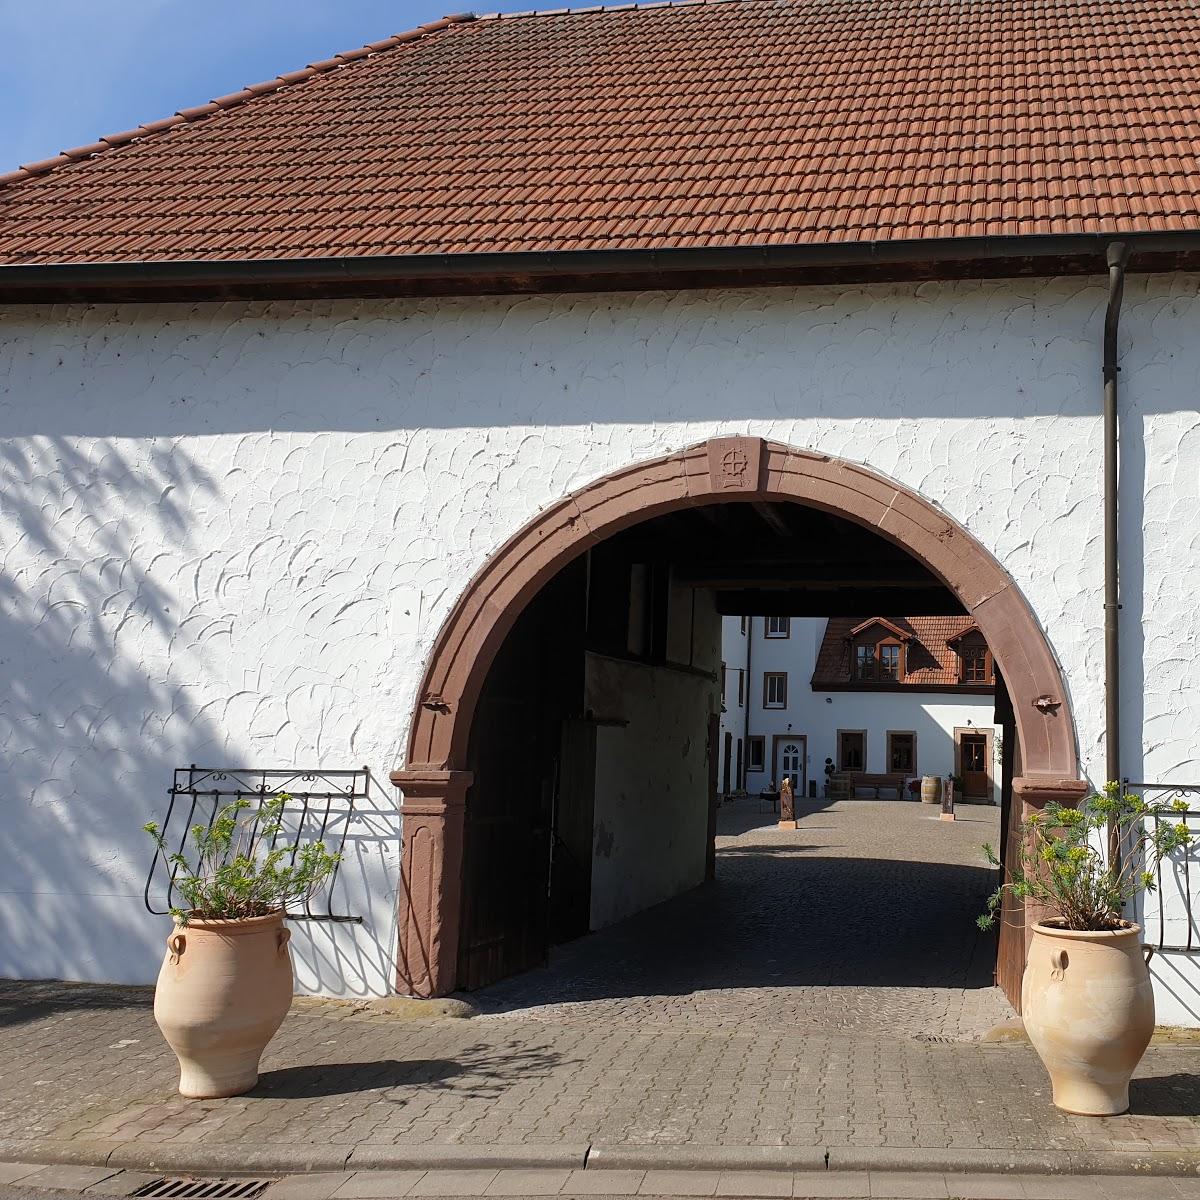 Restaurant "Spormühle" in Dirmstein